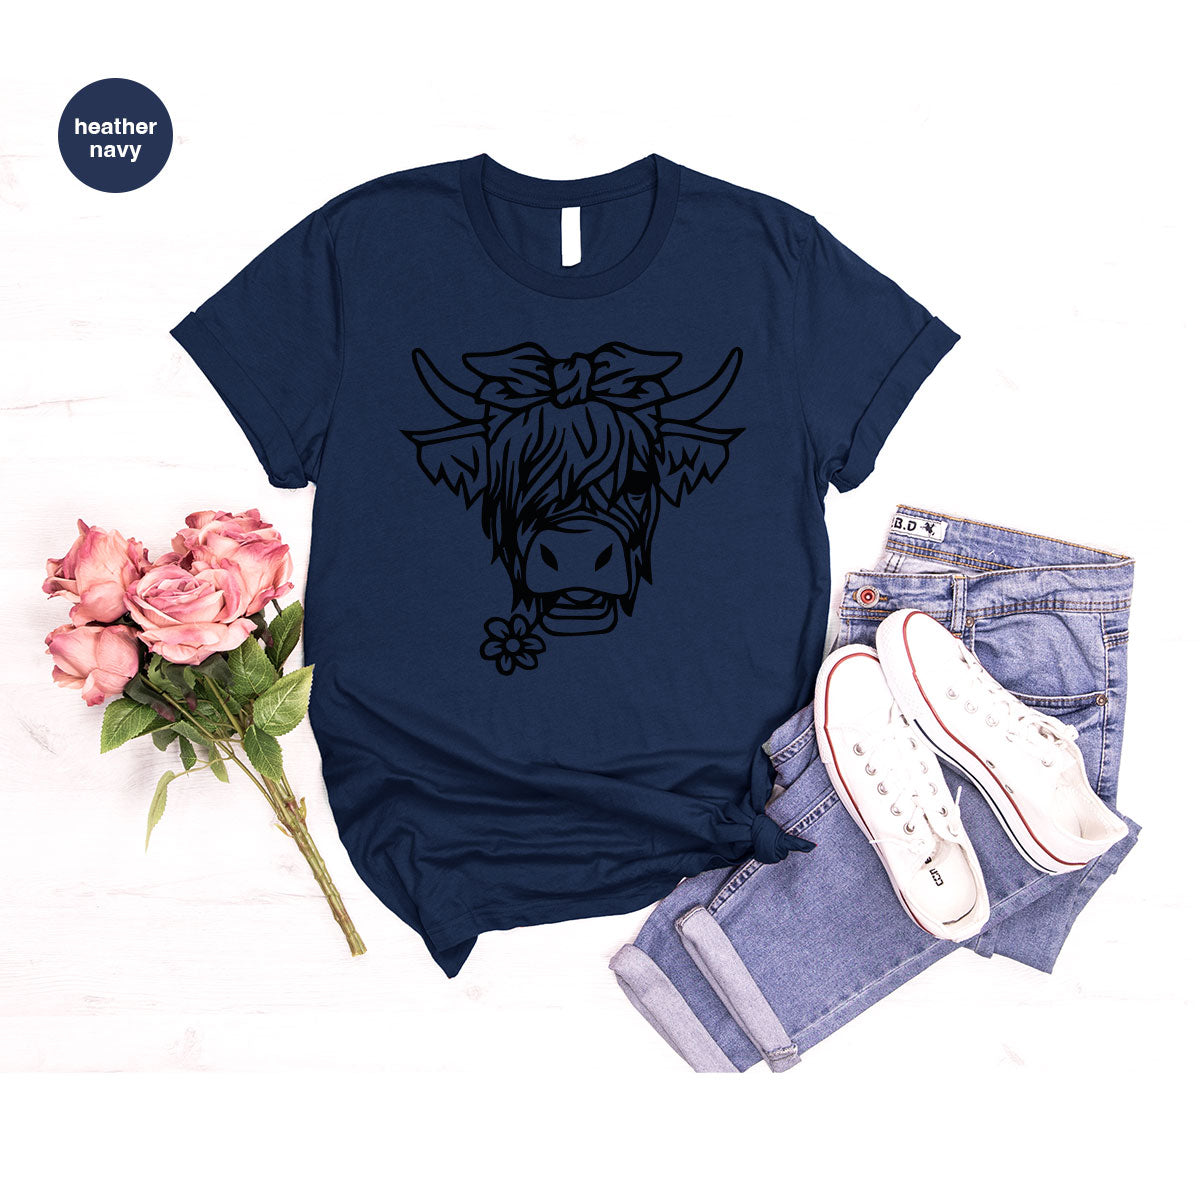 Cool Bull Shirt, Bull With Flower T-Shirt, Funny Bull T-Shirt